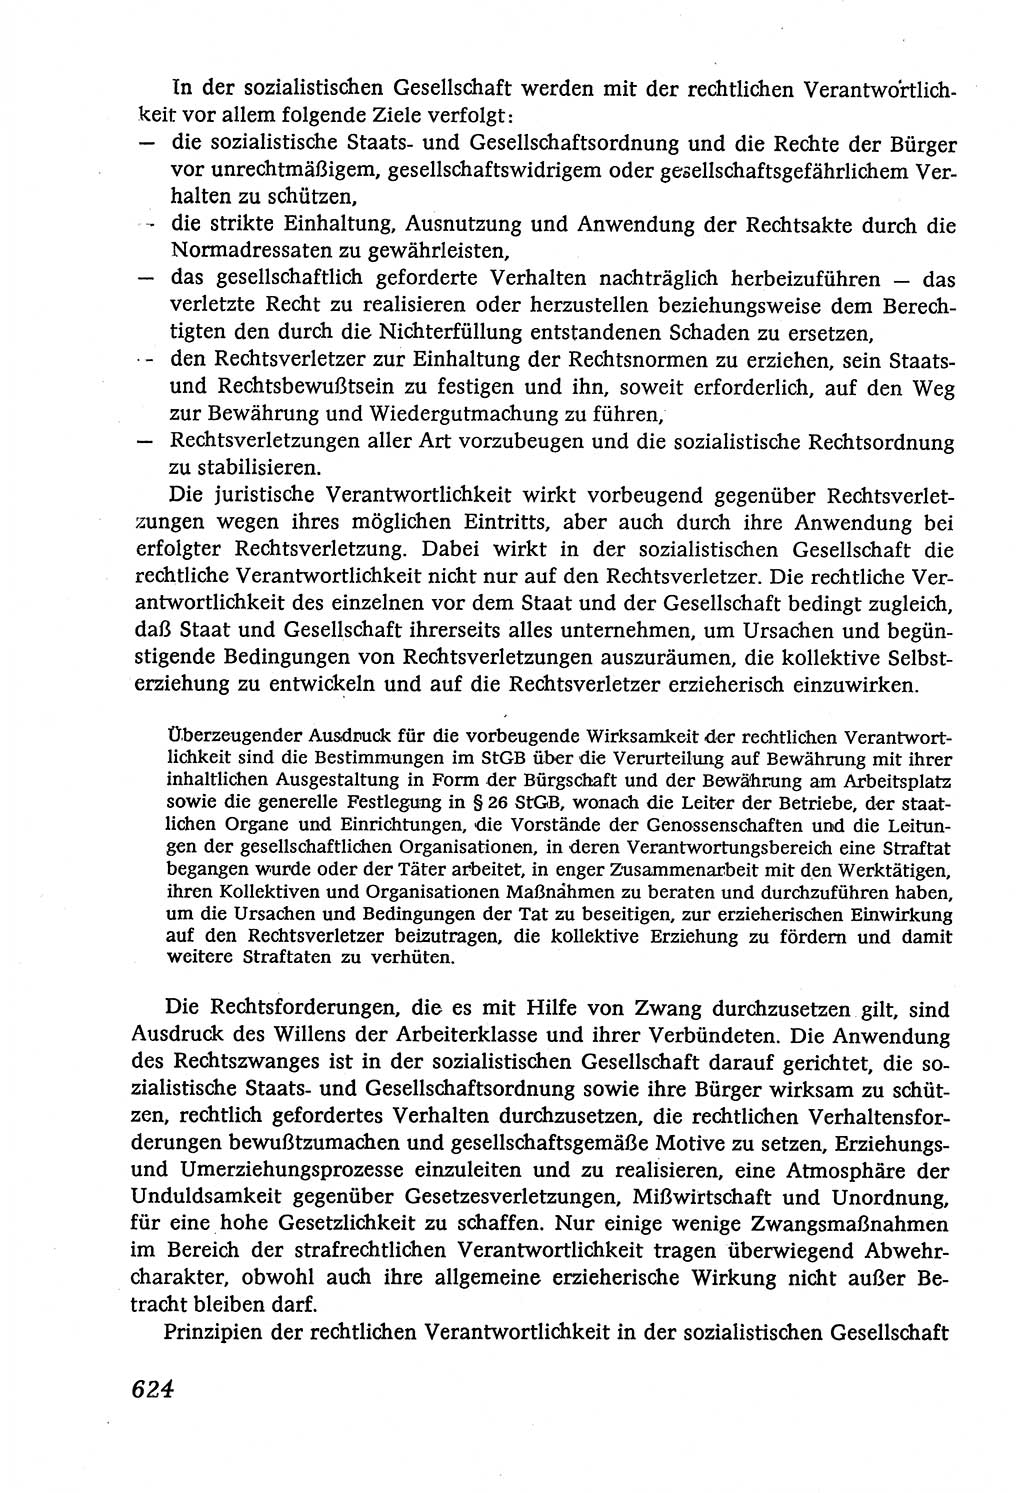 Marxistisch-leninistische (ML) Staats- und Rechtstheorie [Deutsche Demokratische Republik (DDR)], Lehrbuch 1980, Seite 624 (ML St.-R.-Th. DDR Lb. 1980, S. 624)